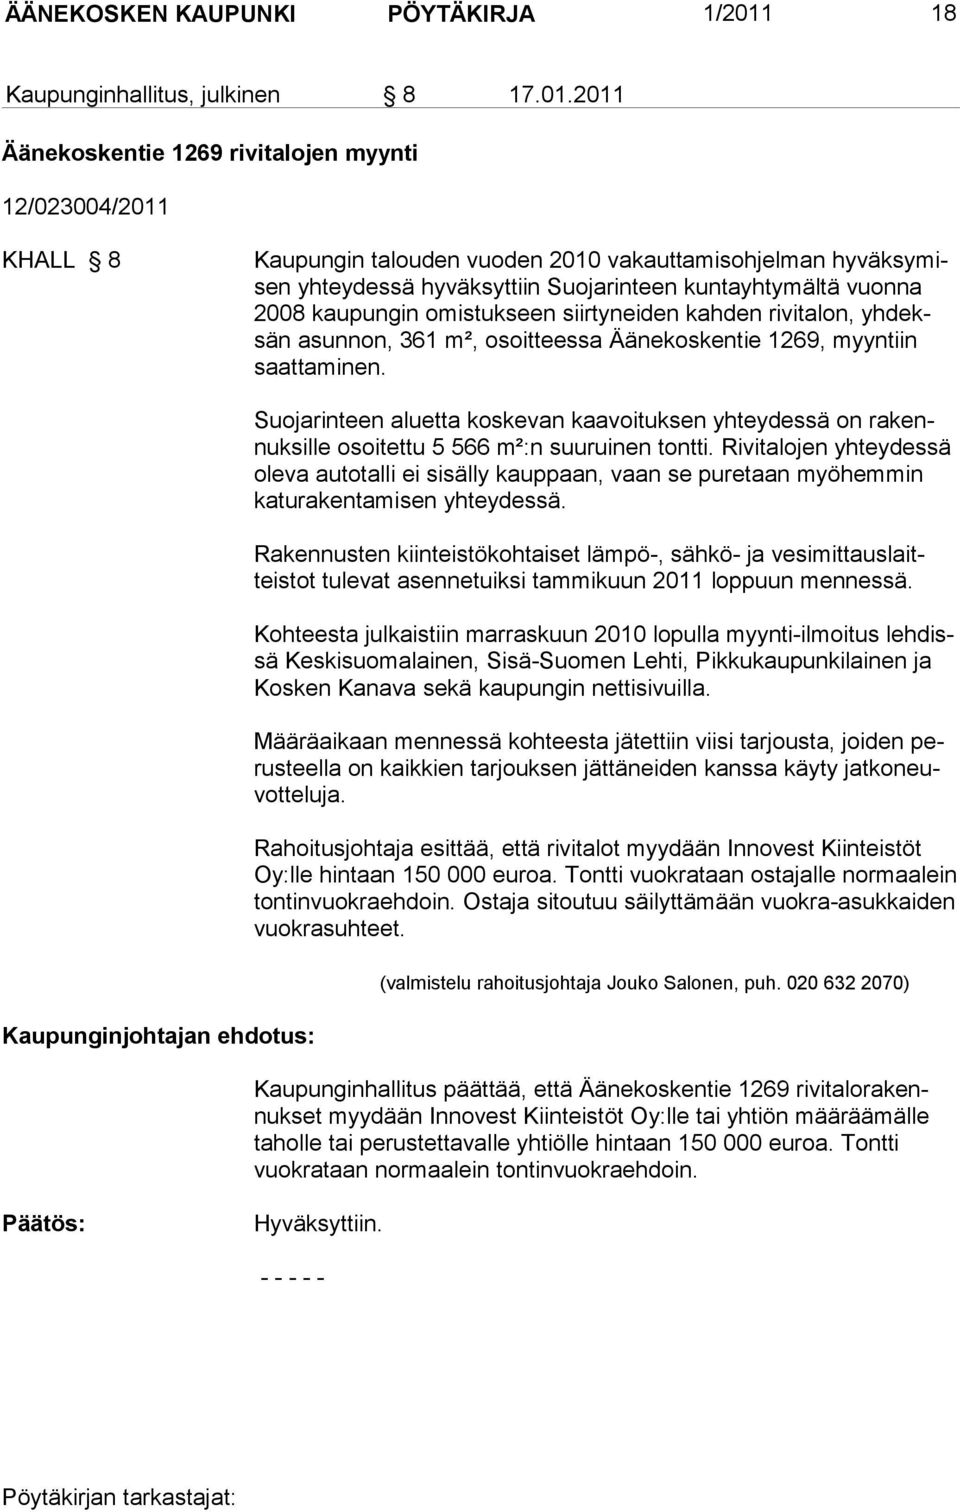 2011 Äänekoskentie 1269 rivitalojen myynti 12/023004/2011 KHALL 8 Kaupungin talouden vuoden 2010 vakauttamisohjelman hyväksymisen yhteydessä hyväksyttiin Suojarinteen kuntayhtymältä vuonna 2008